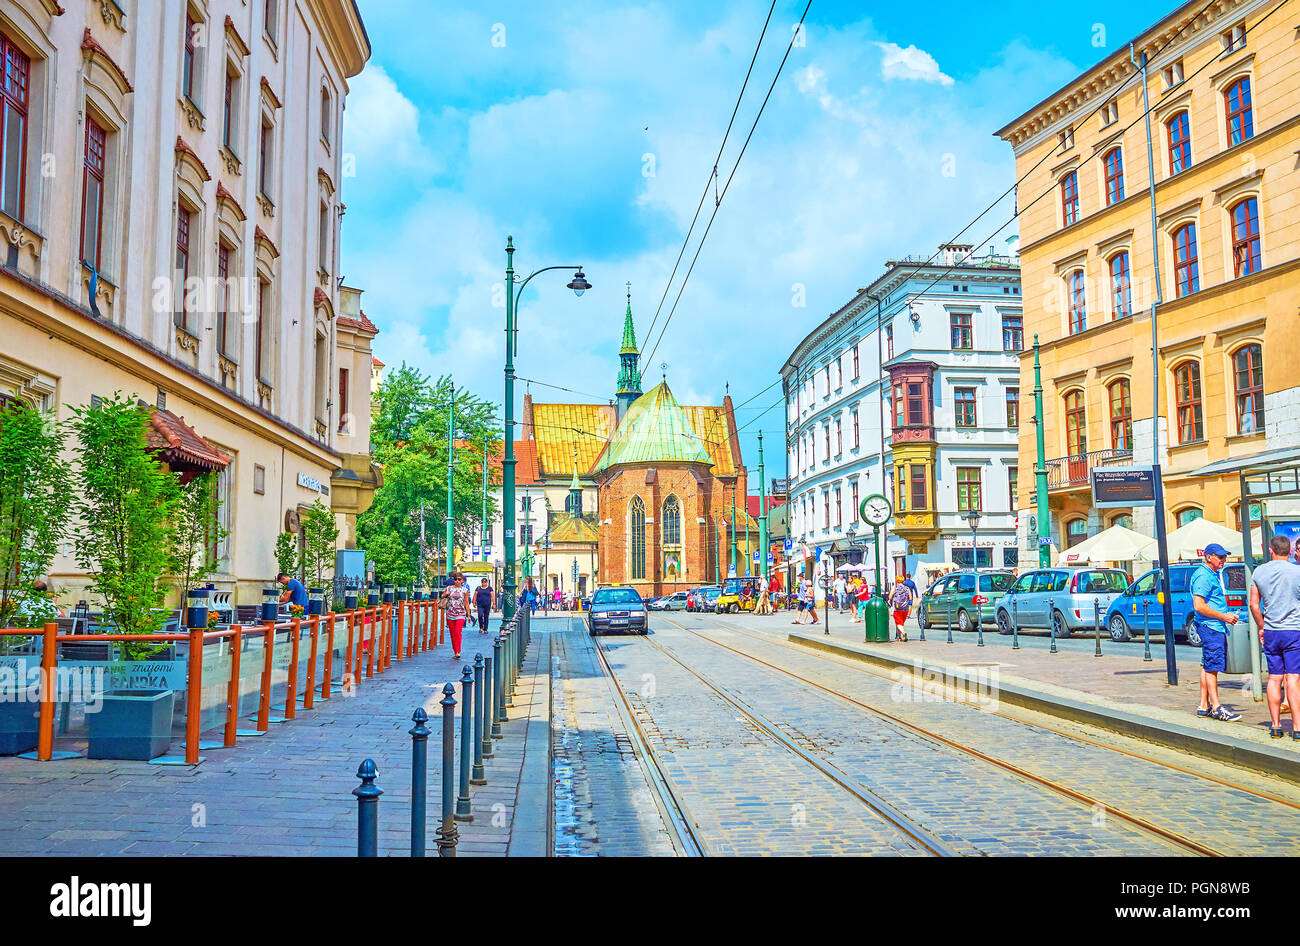 Cracovia in Polonia - Giugno 11, 2018: La scena urbana della parte centrale di Cracovia con la Chiesa di San Francesco di Assisi sullo sfondo, il 11 giugno a Cracovia Foto Stock